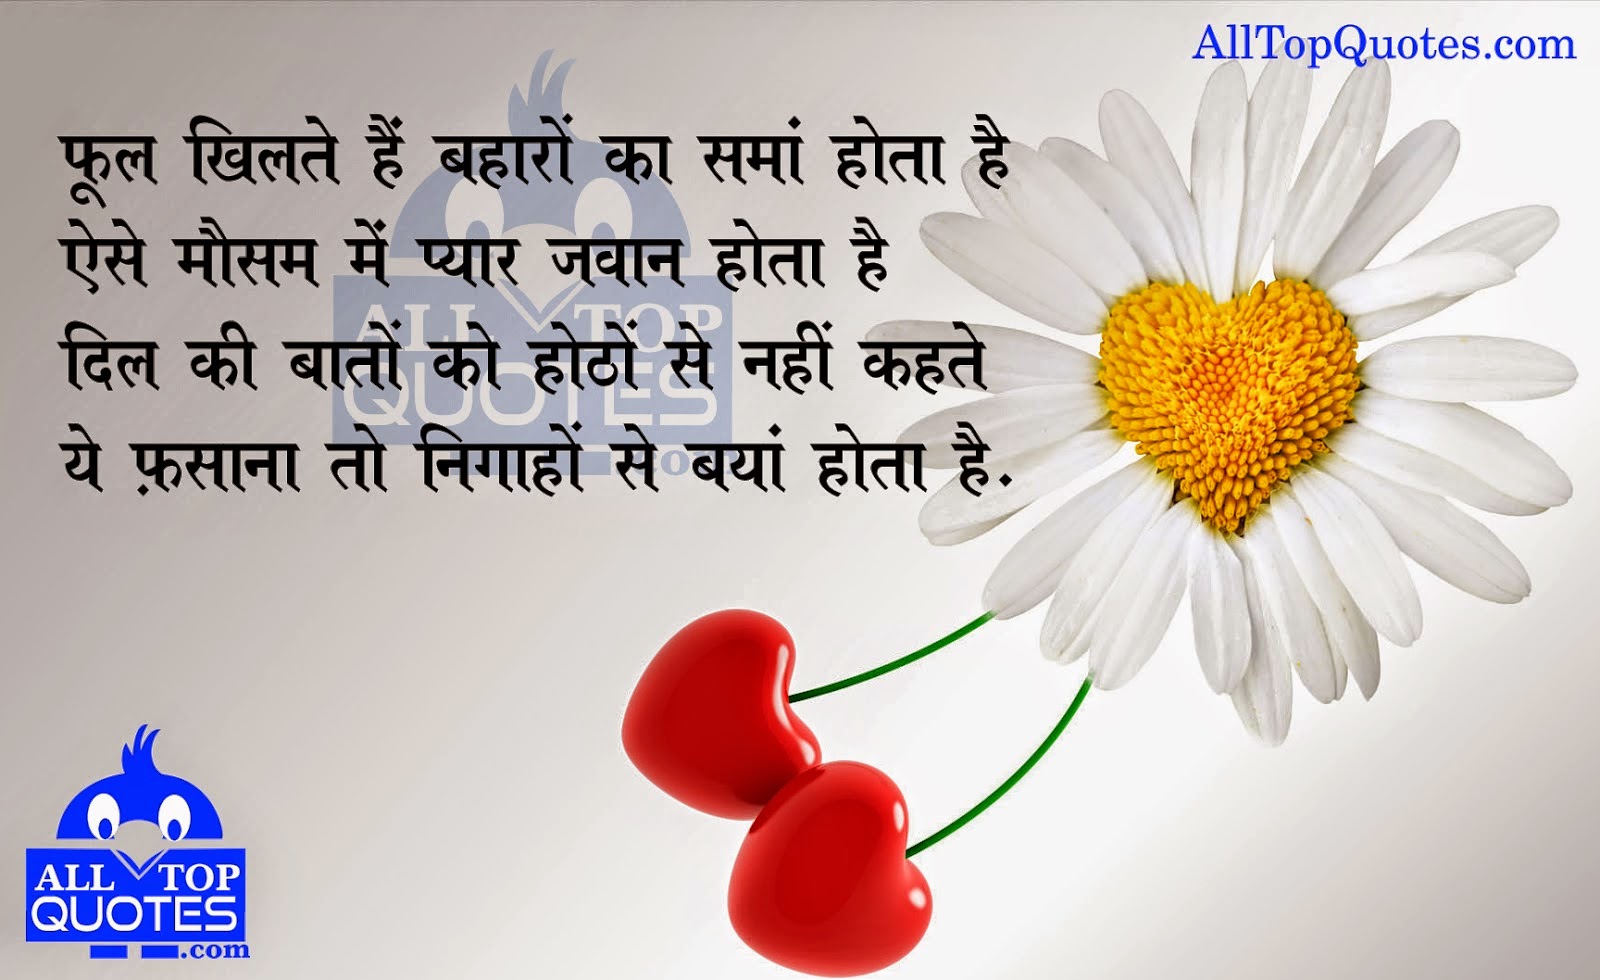 Hindi Love and Romantic Shayari in Hindi font this Romantic Hindi Quote with Your Dear e